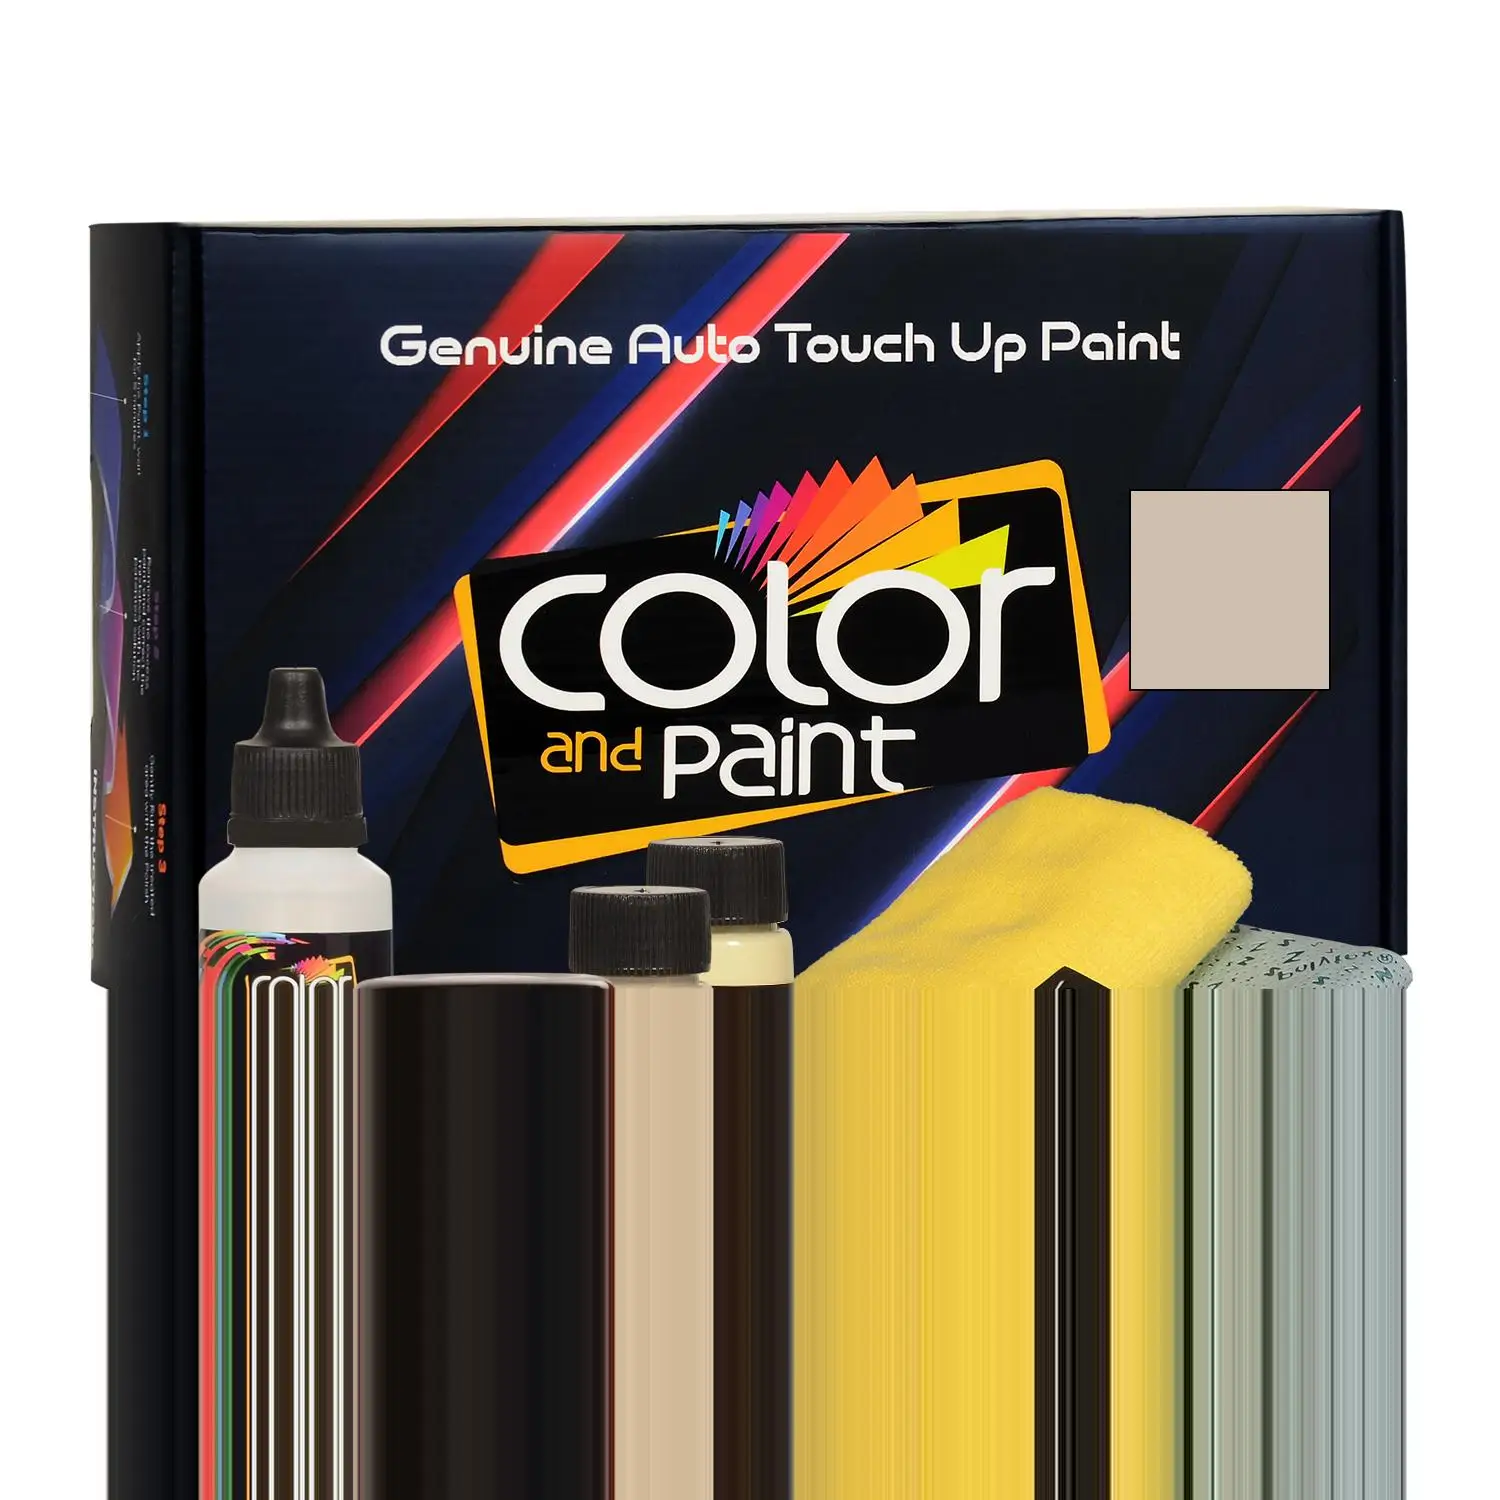 

Цветная и краска, совместимая с Infiniti, автомобильная краска для подкрашивания-PEBBLE бежевый MET-CG2-базовый уход